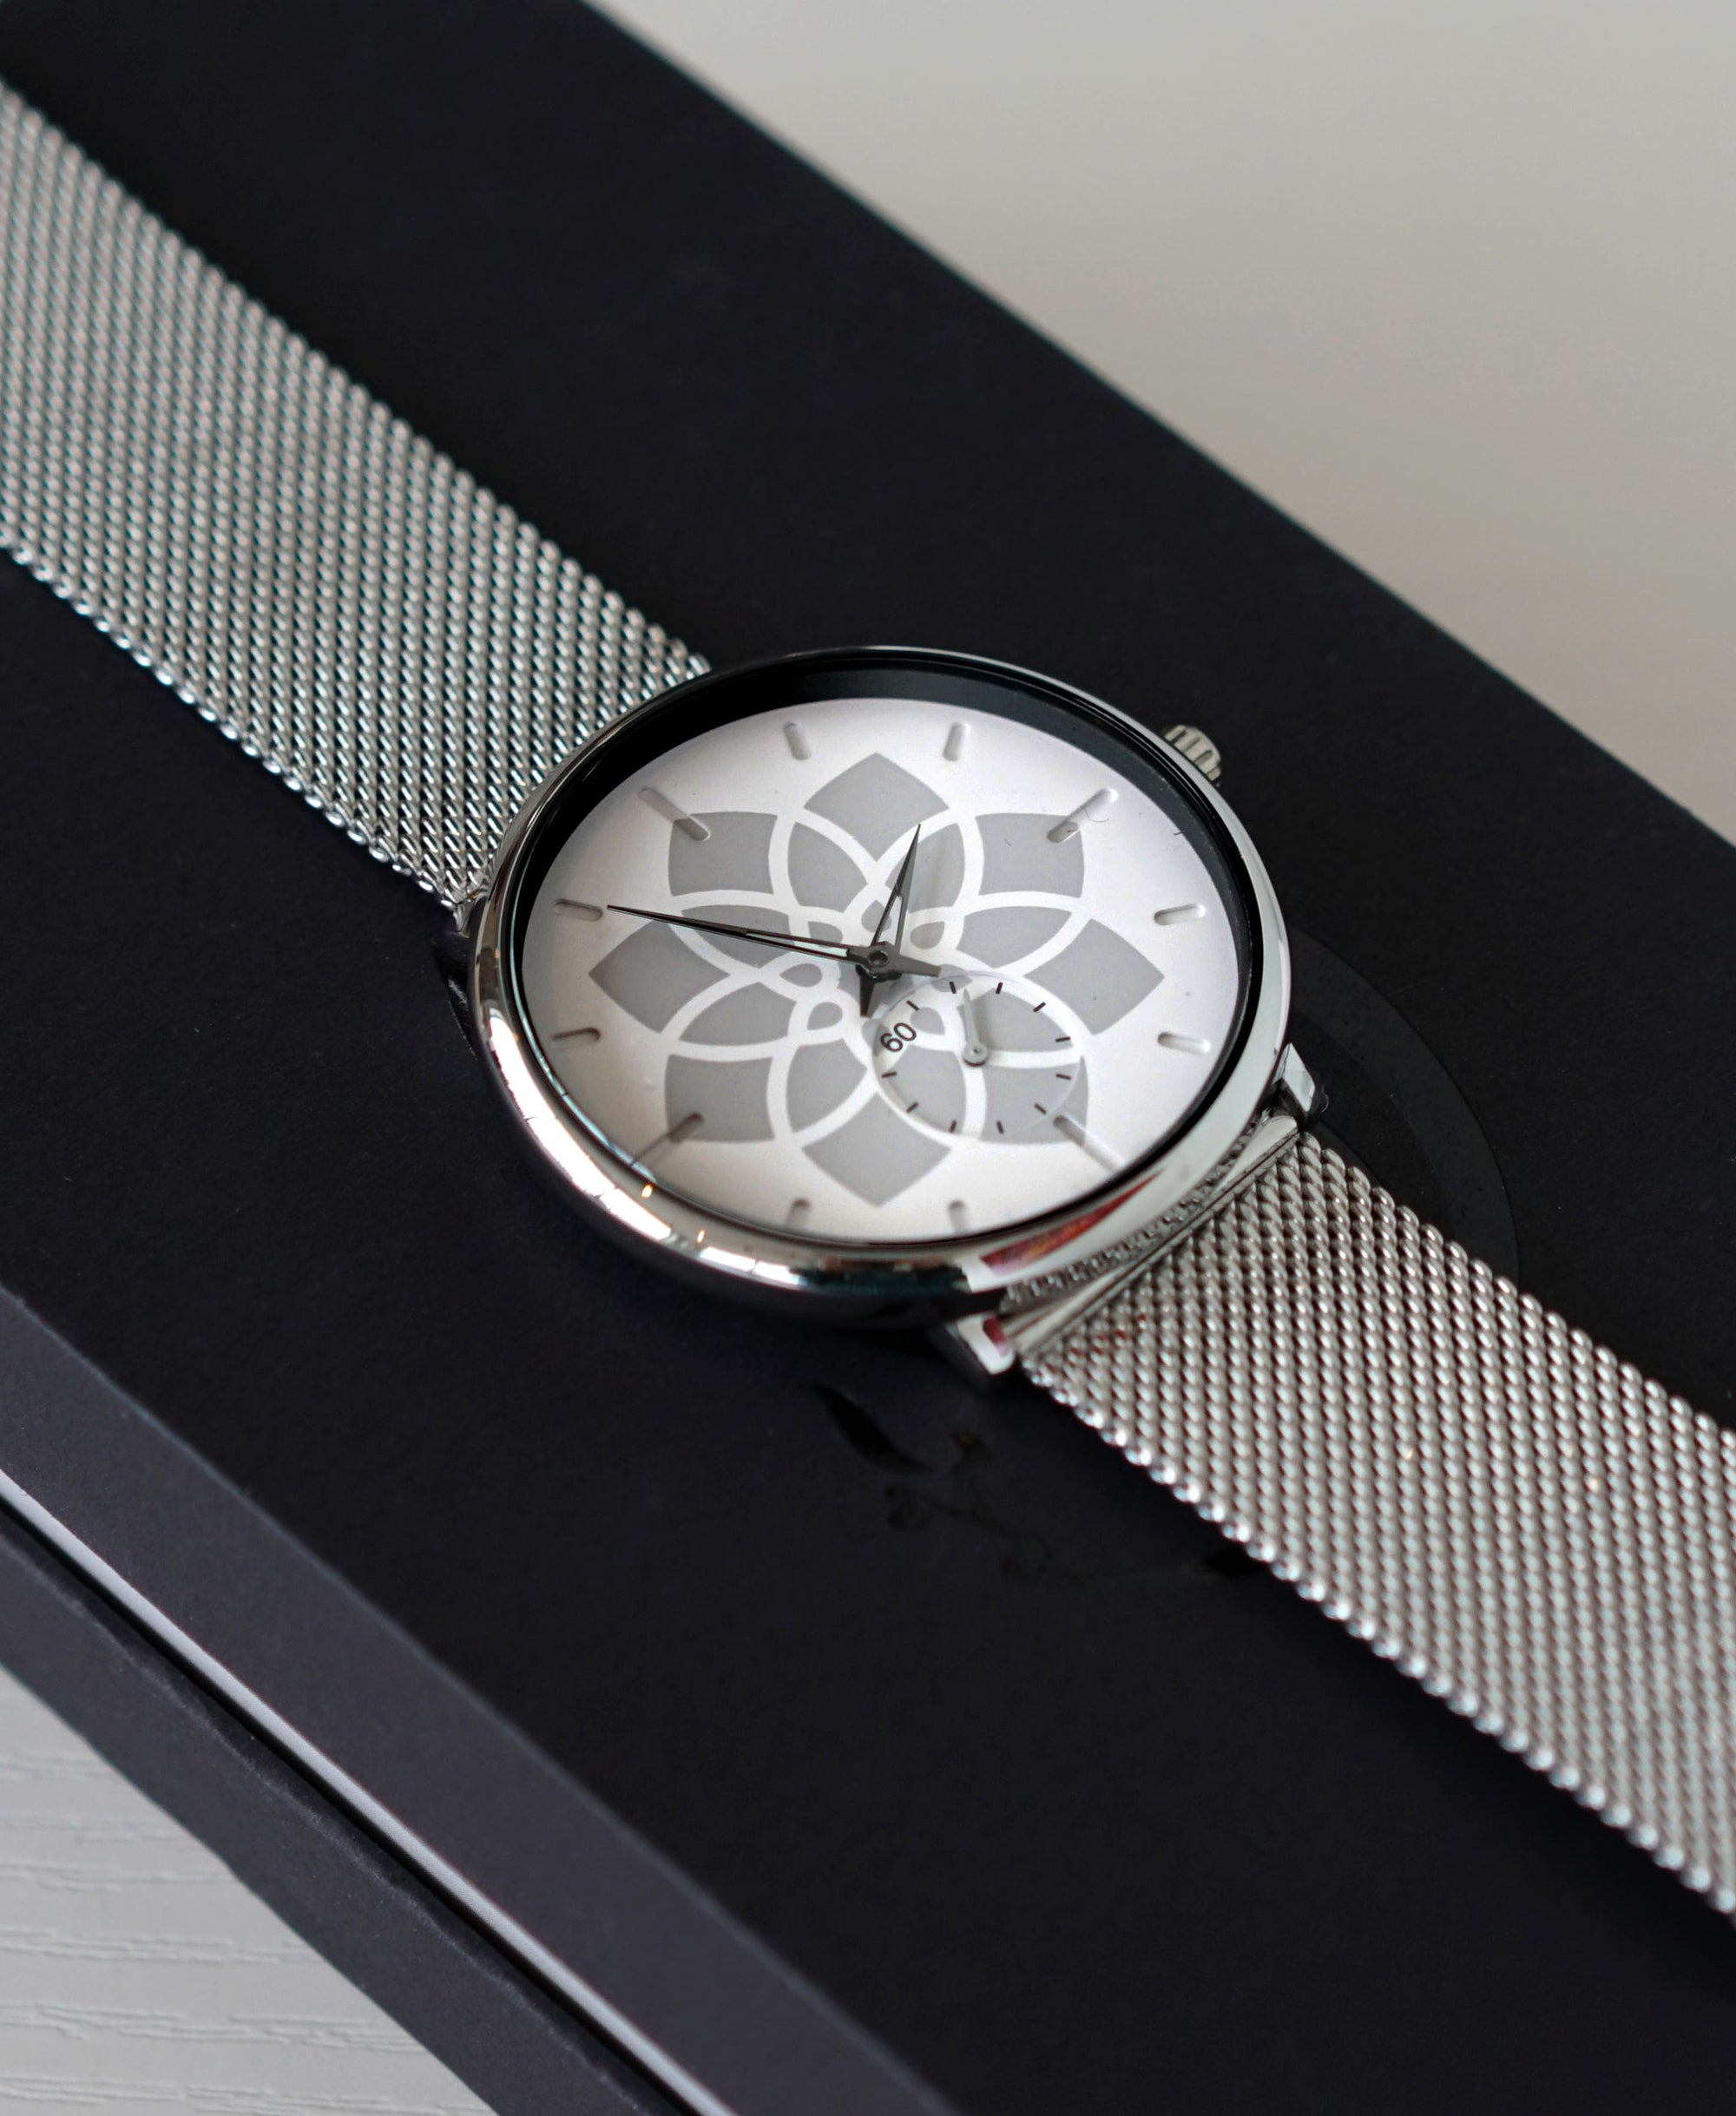 Mosaic Sapphire Crystal Watch by Threyda